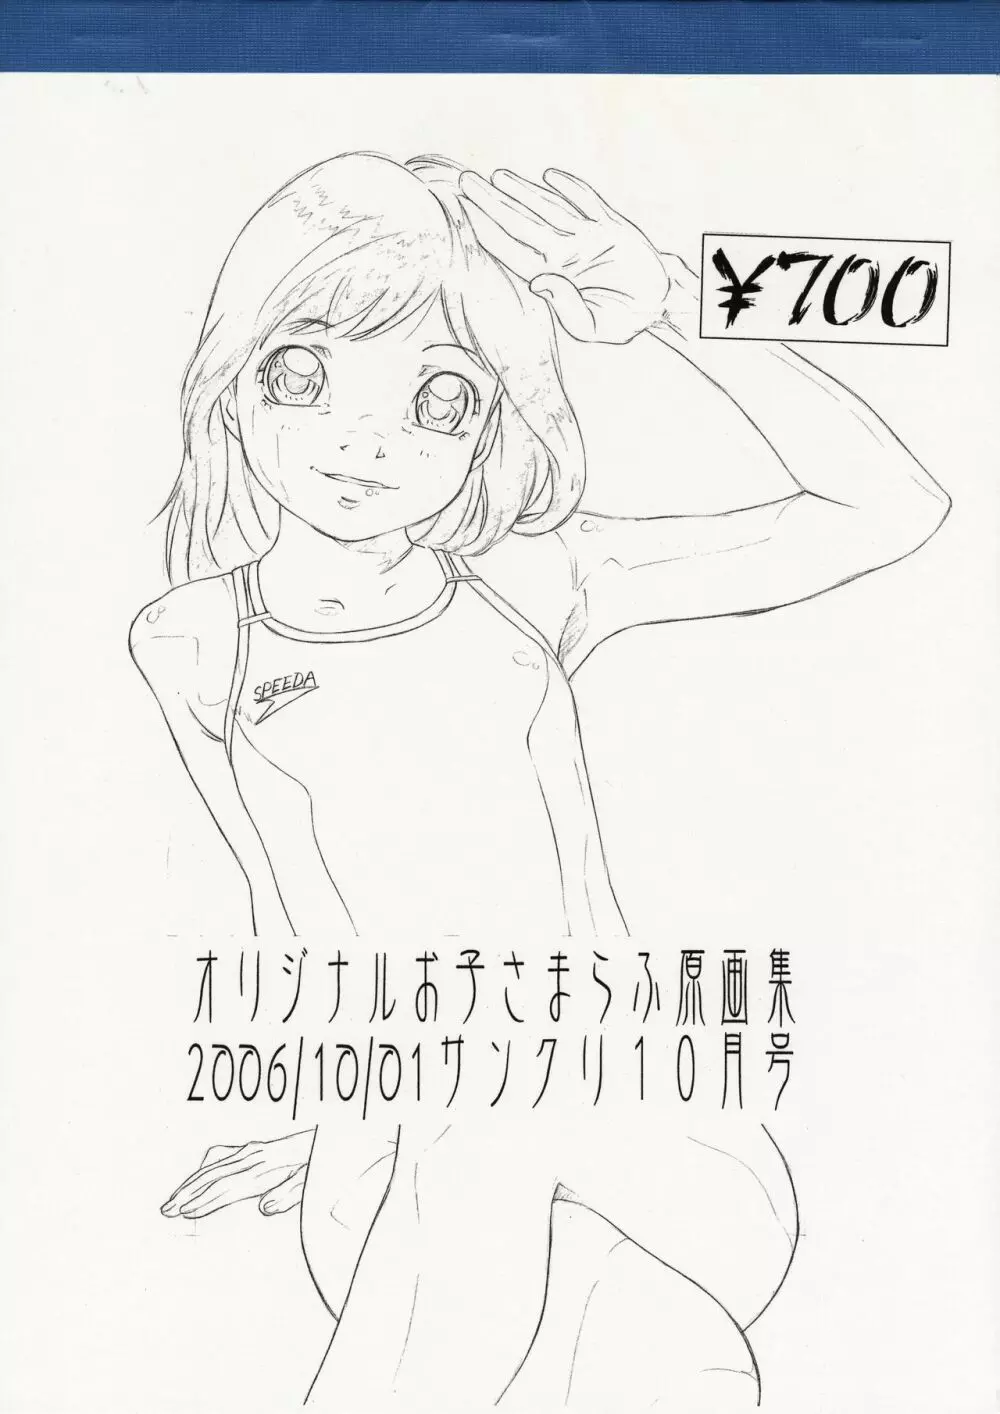 オリジナルお子さまらふ原画集 2006/10/01サンクリ10月号